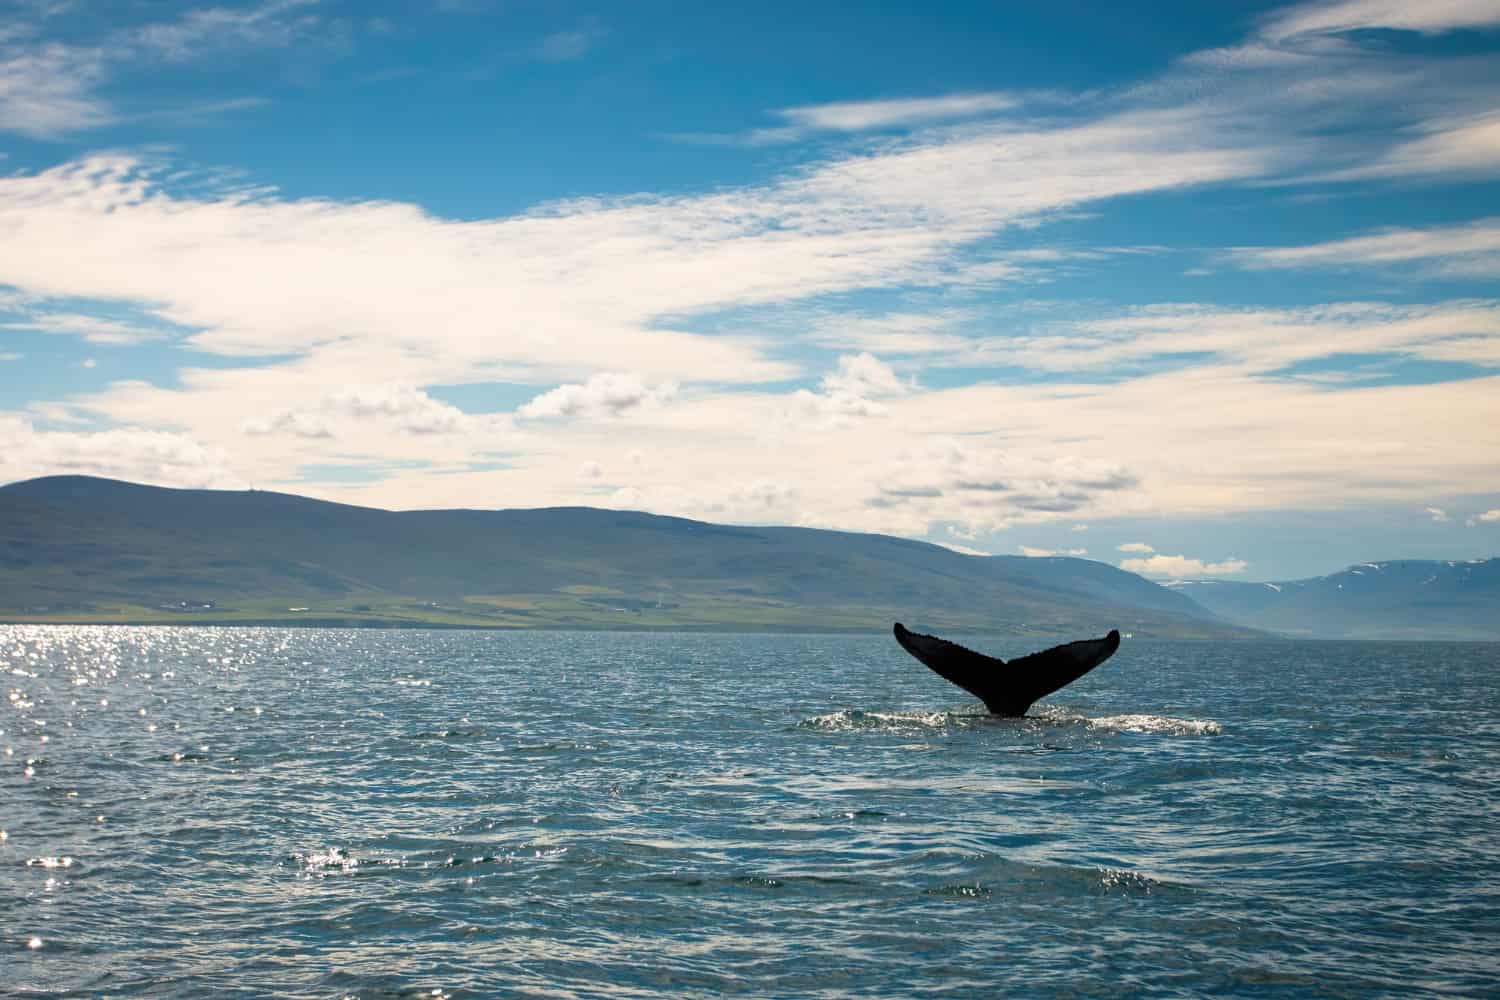 Ballena nadando en aguas cristalinas, símbolo de la protección y conservación de las ballenas